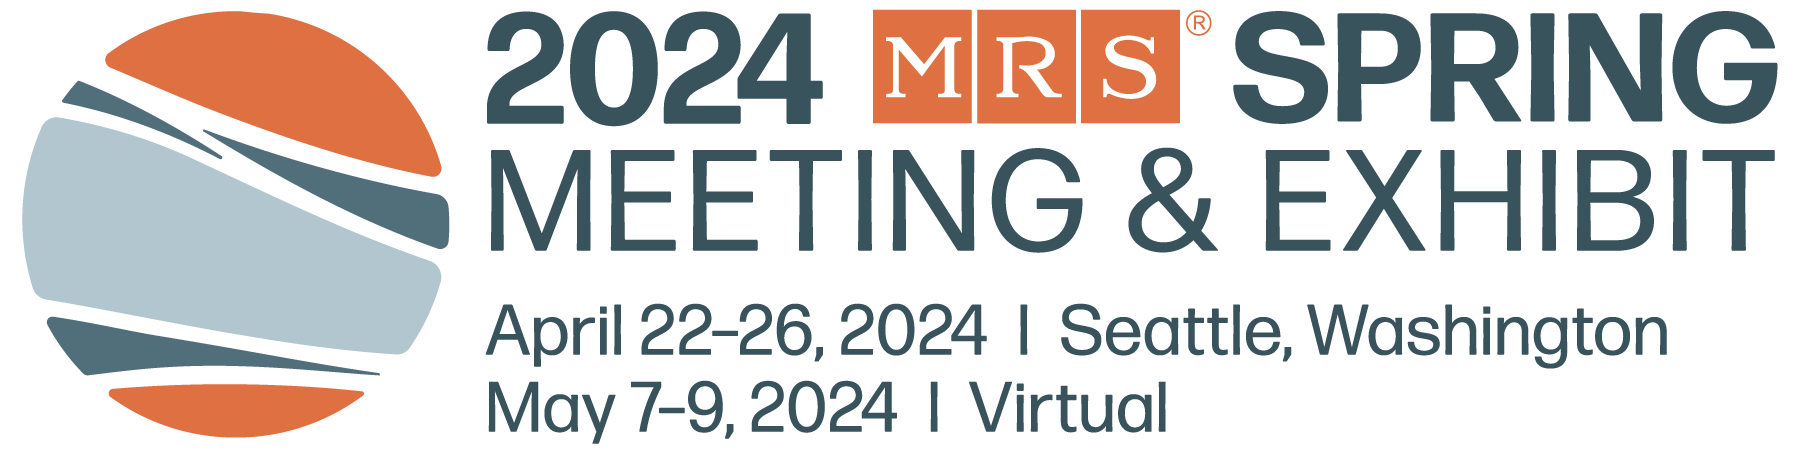 2024 MRS Spring Meeting